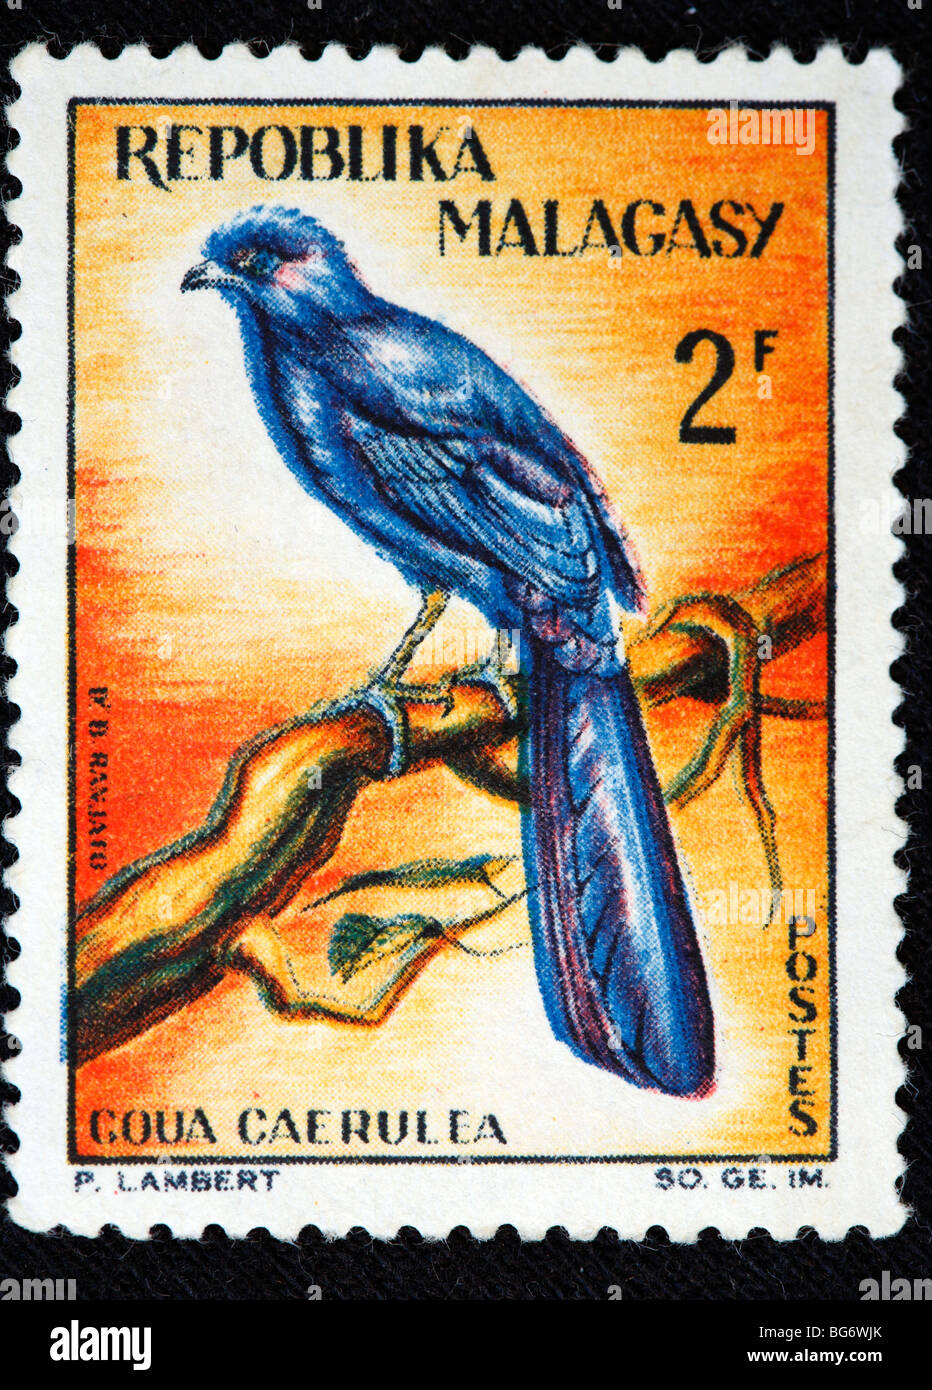 Goua caerulea, timbre-poste, Madagascar (Madagascar) Banque D'Images